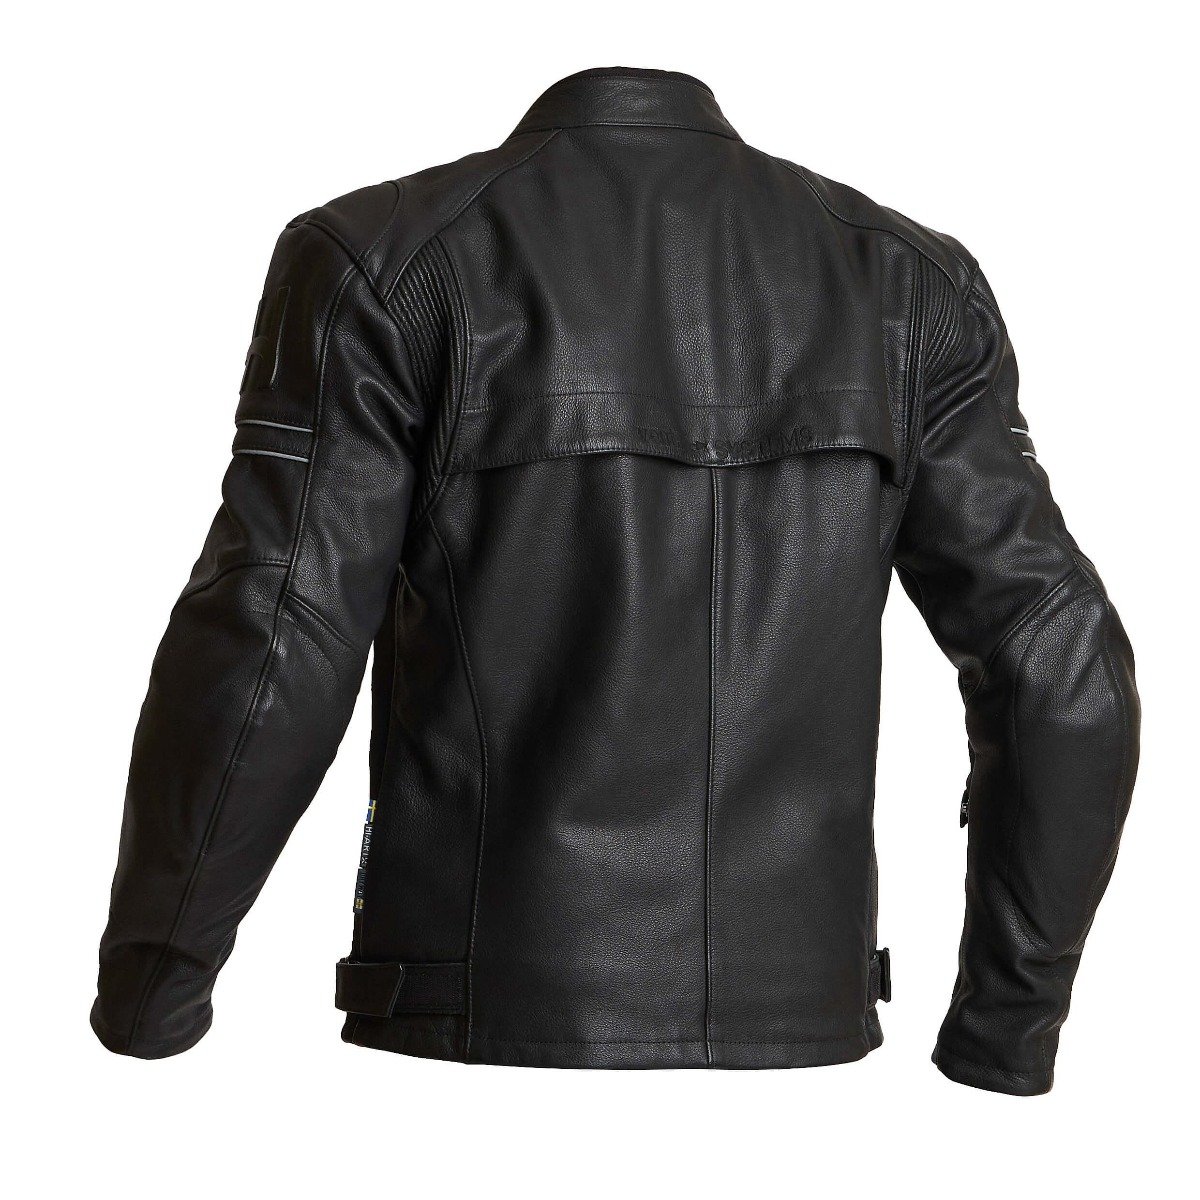 Image of Halvarssons Idre Jacket Black Size 54 EN